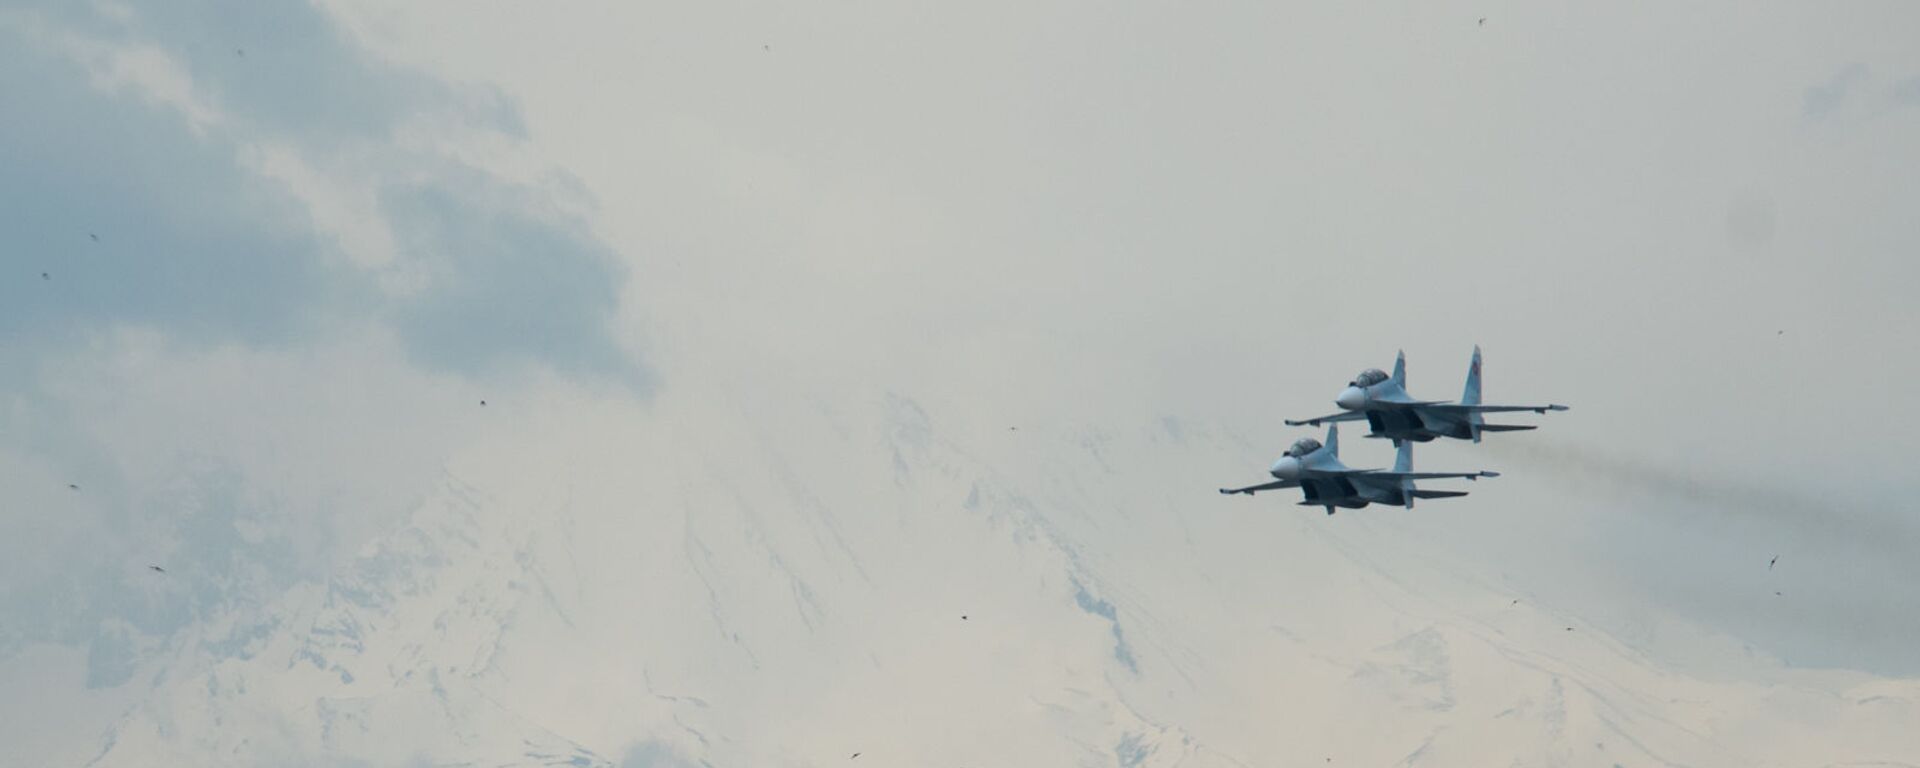 Истребители Су-30СМ пролетают над парком Победы на авиапараде (9 мая 2020). Еревaн - Sputnik Армения, 1920, 22.12.2020